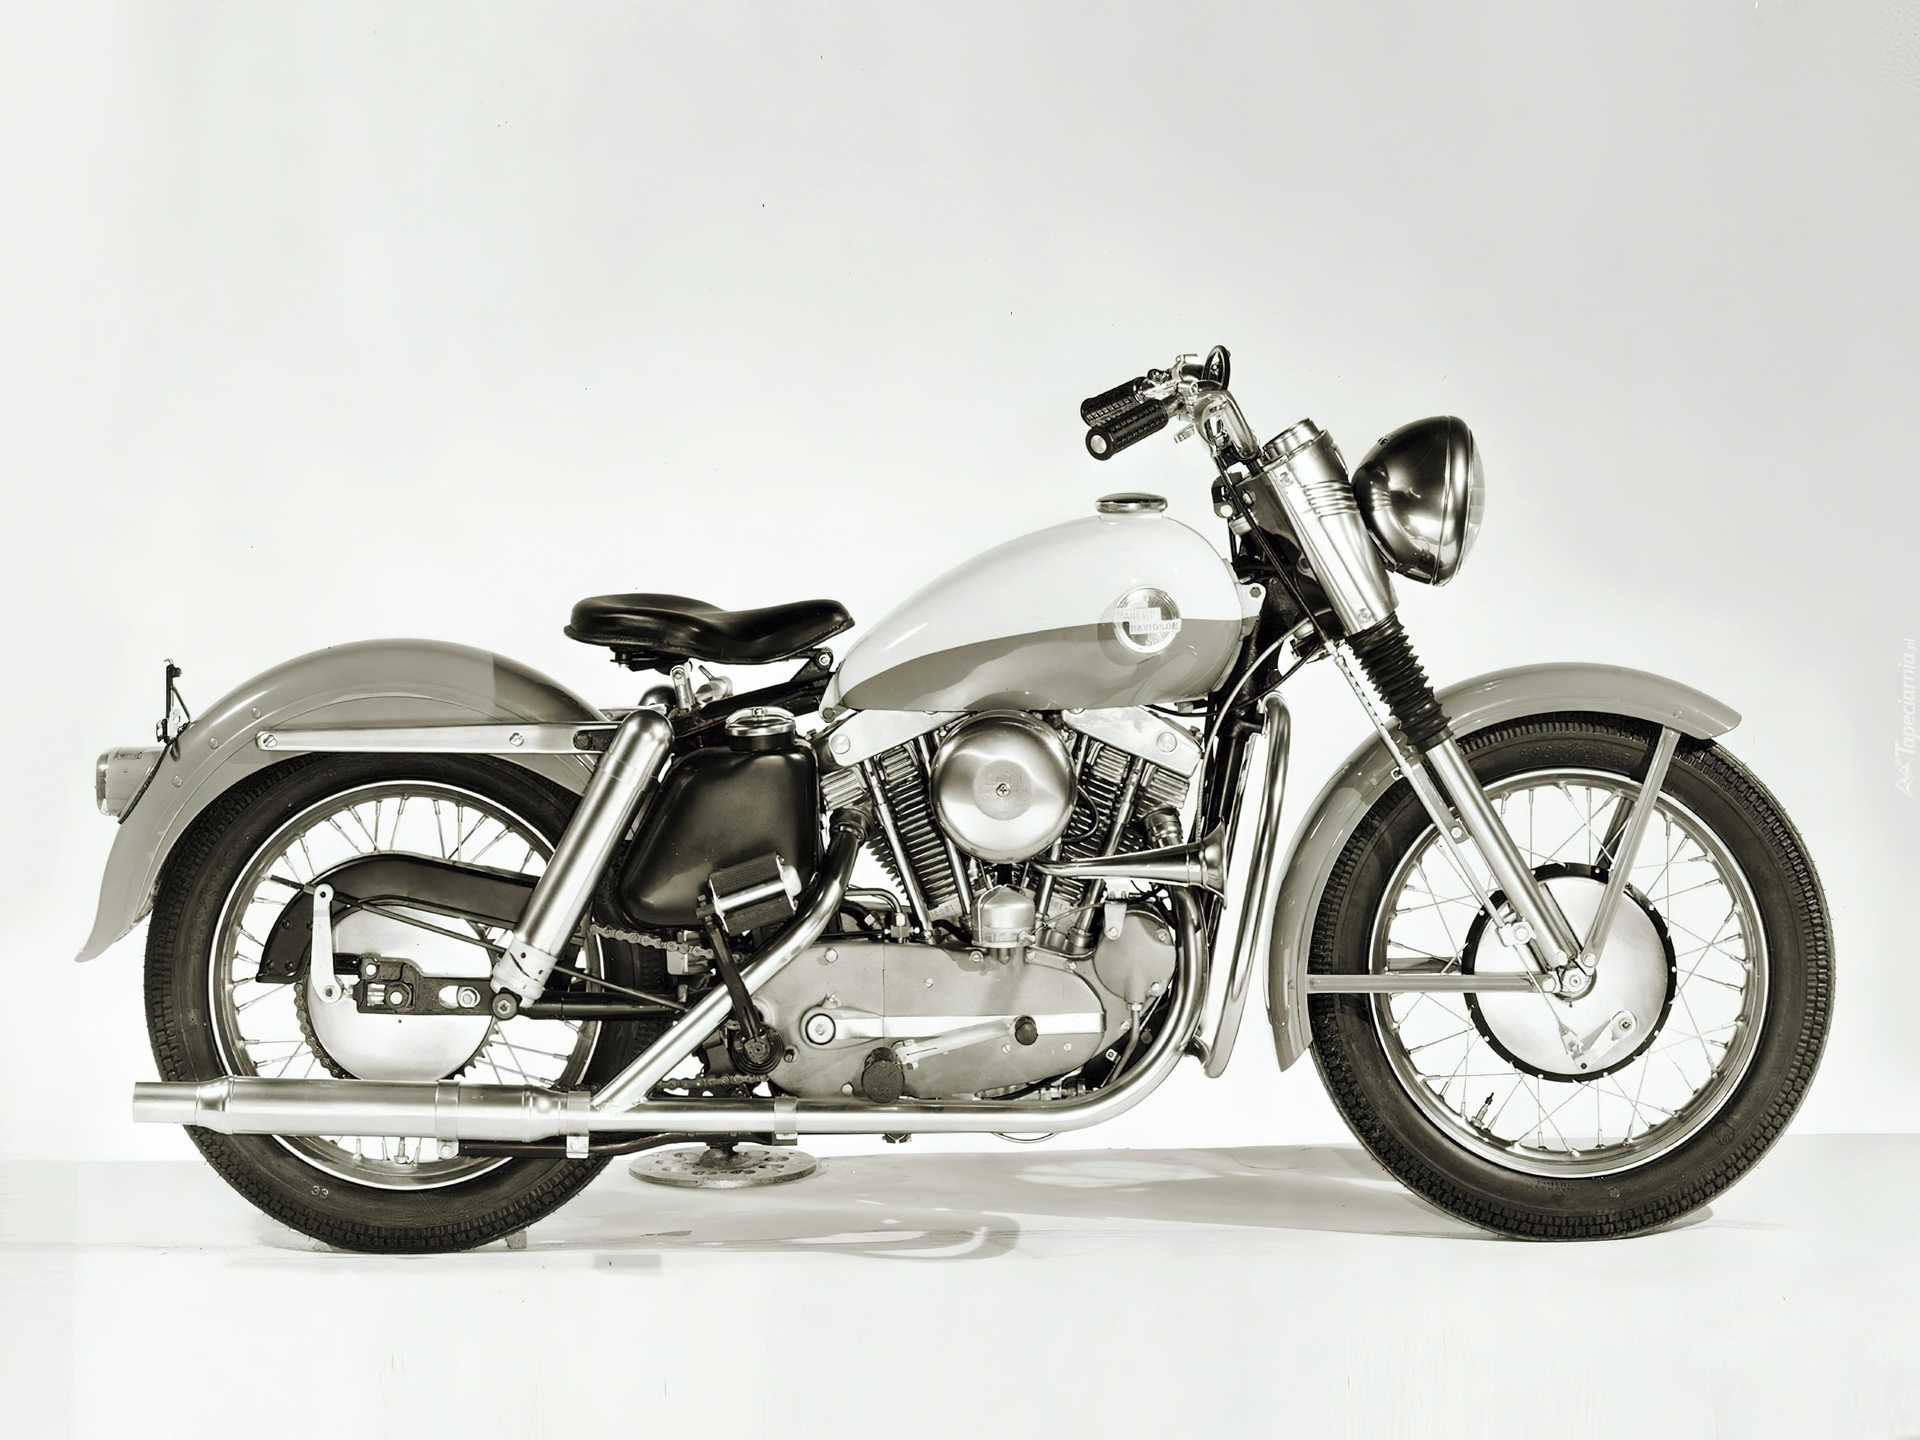 Zabytkowy, Harley Davidson XL Sportster